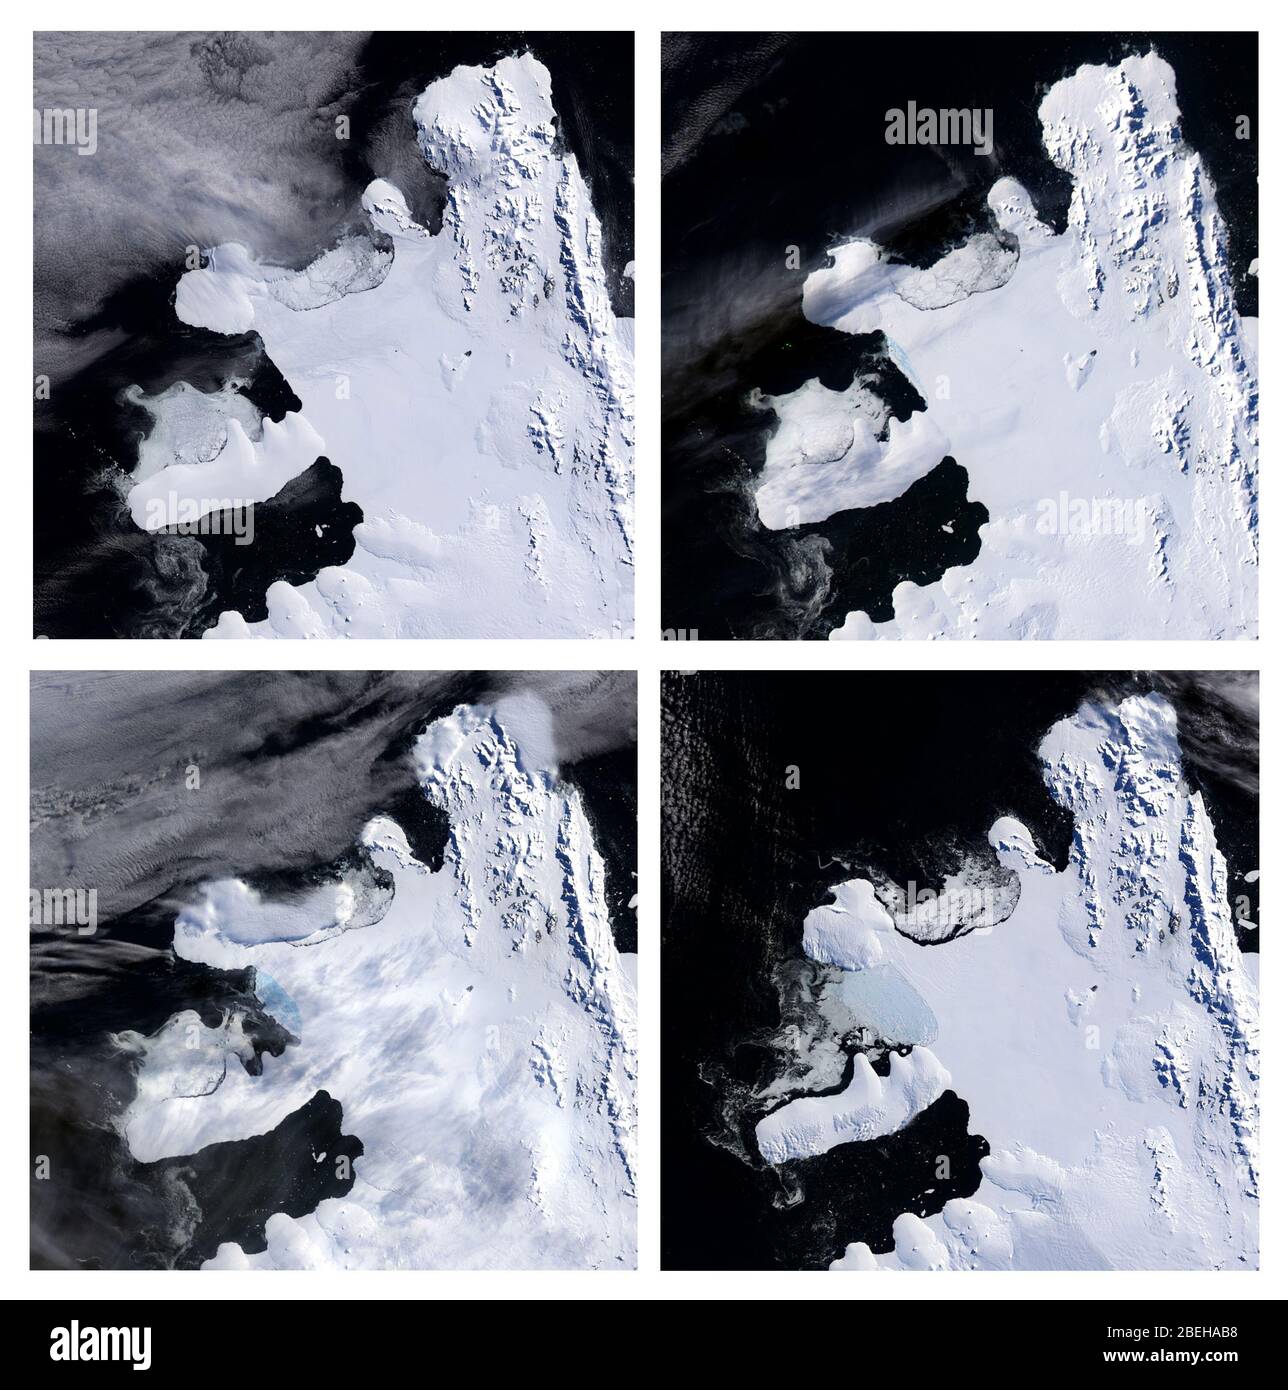 Désintégration du plateau de glace Wilkins, Antarctique Banque D'Images